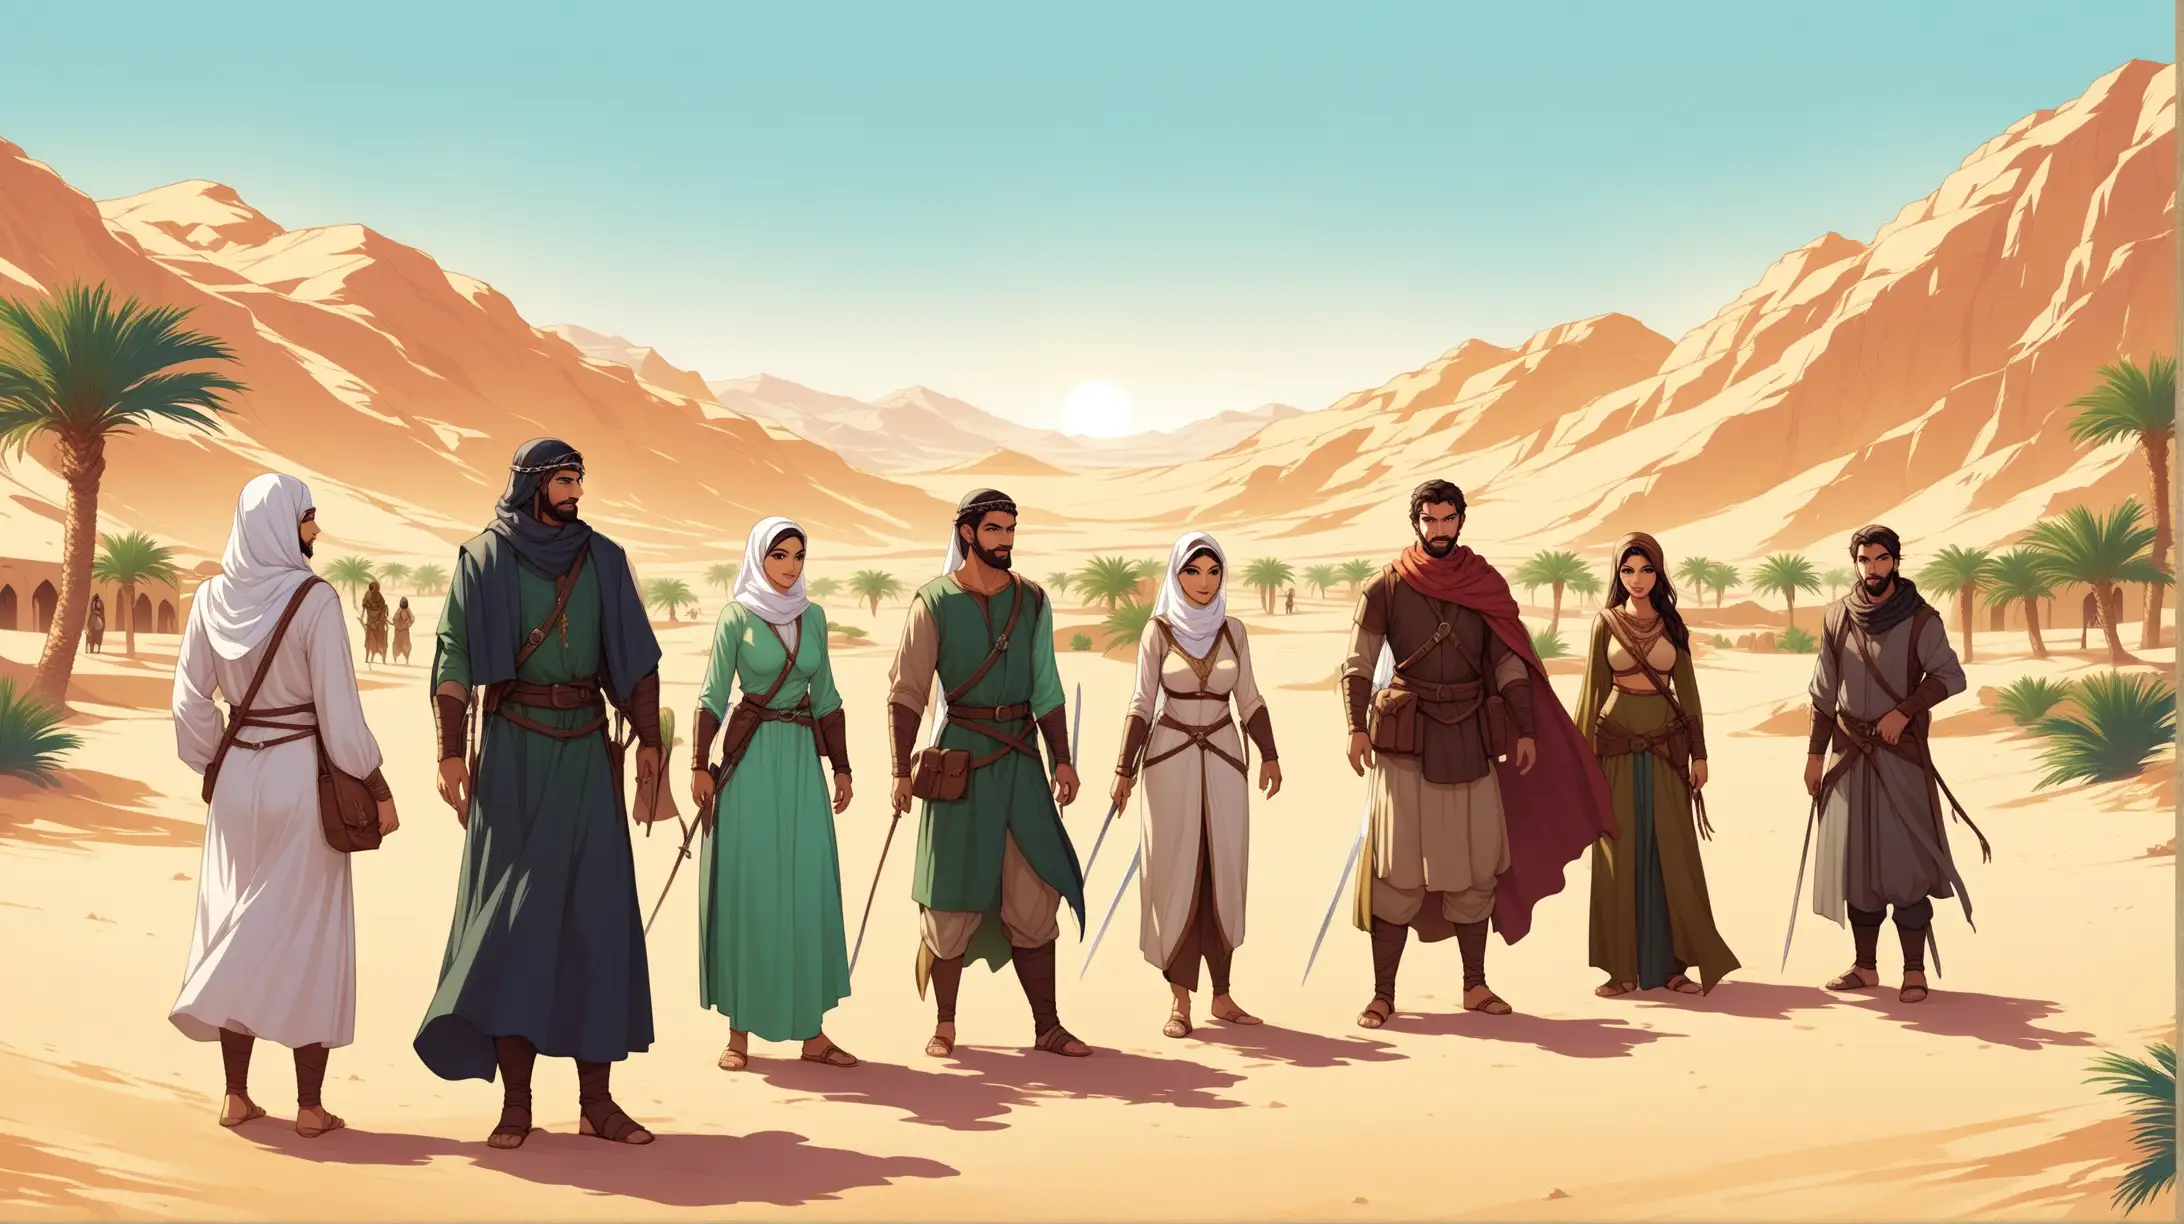 Arabic Persian Adventurers at Desert Oasis in Medieval Fantasy Setting